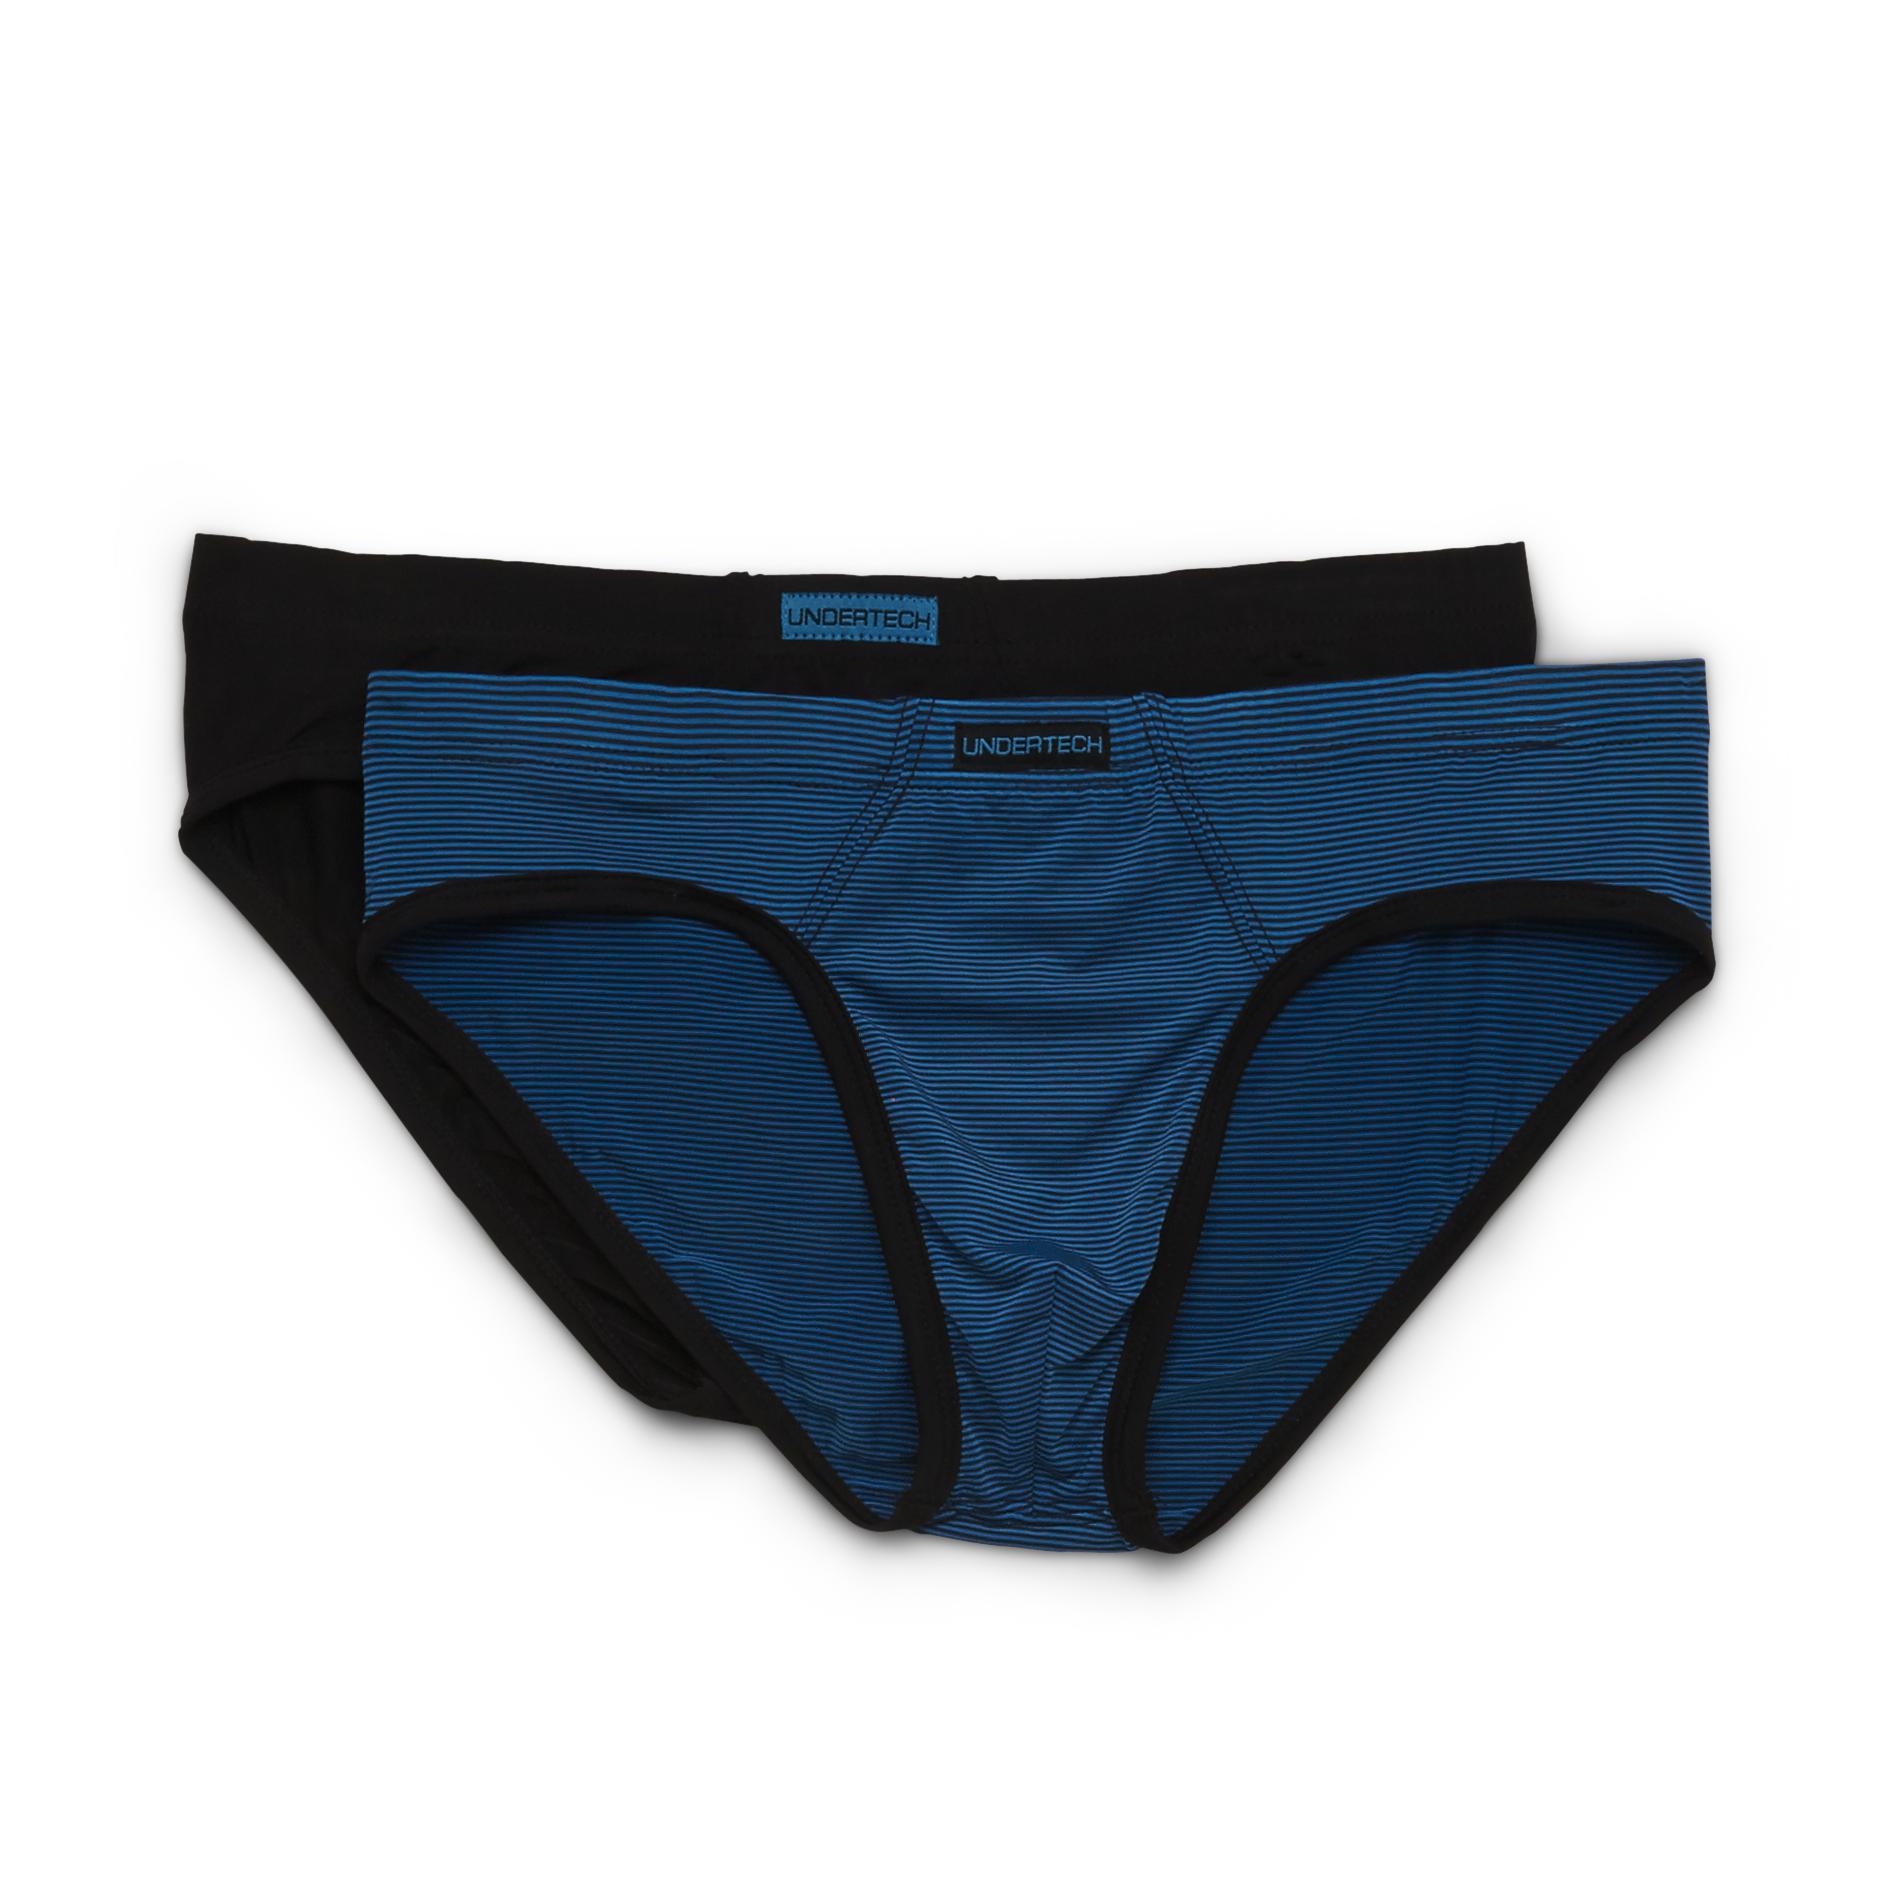 Undertech Men's 2-Pack Brief Underwear - Striped